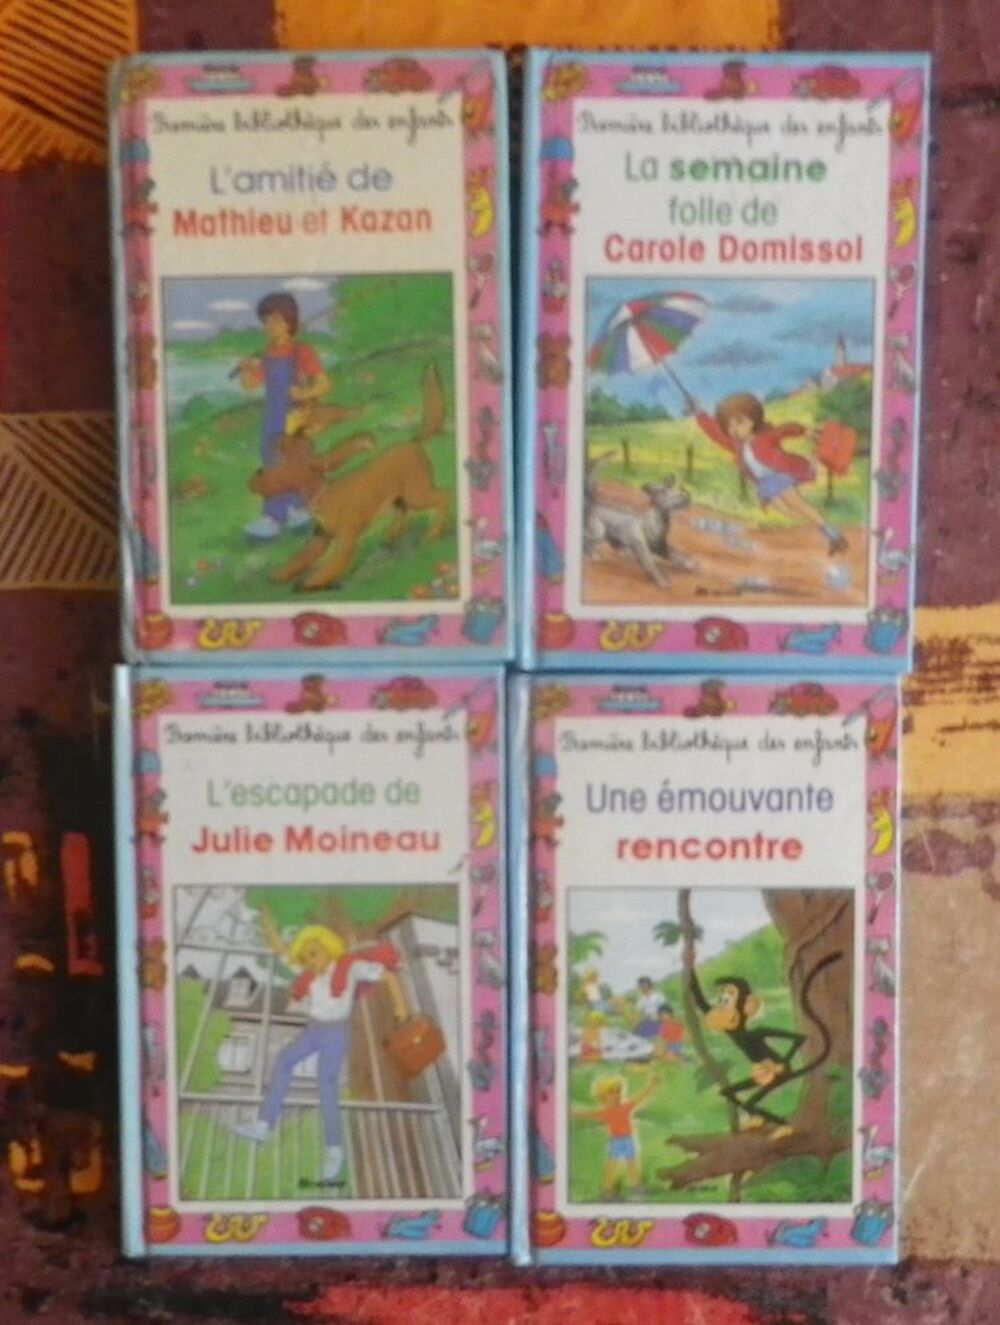 LO DE 4 PREMIERE BIBLIOTHEQUE DES ENFANTS Livres et BD